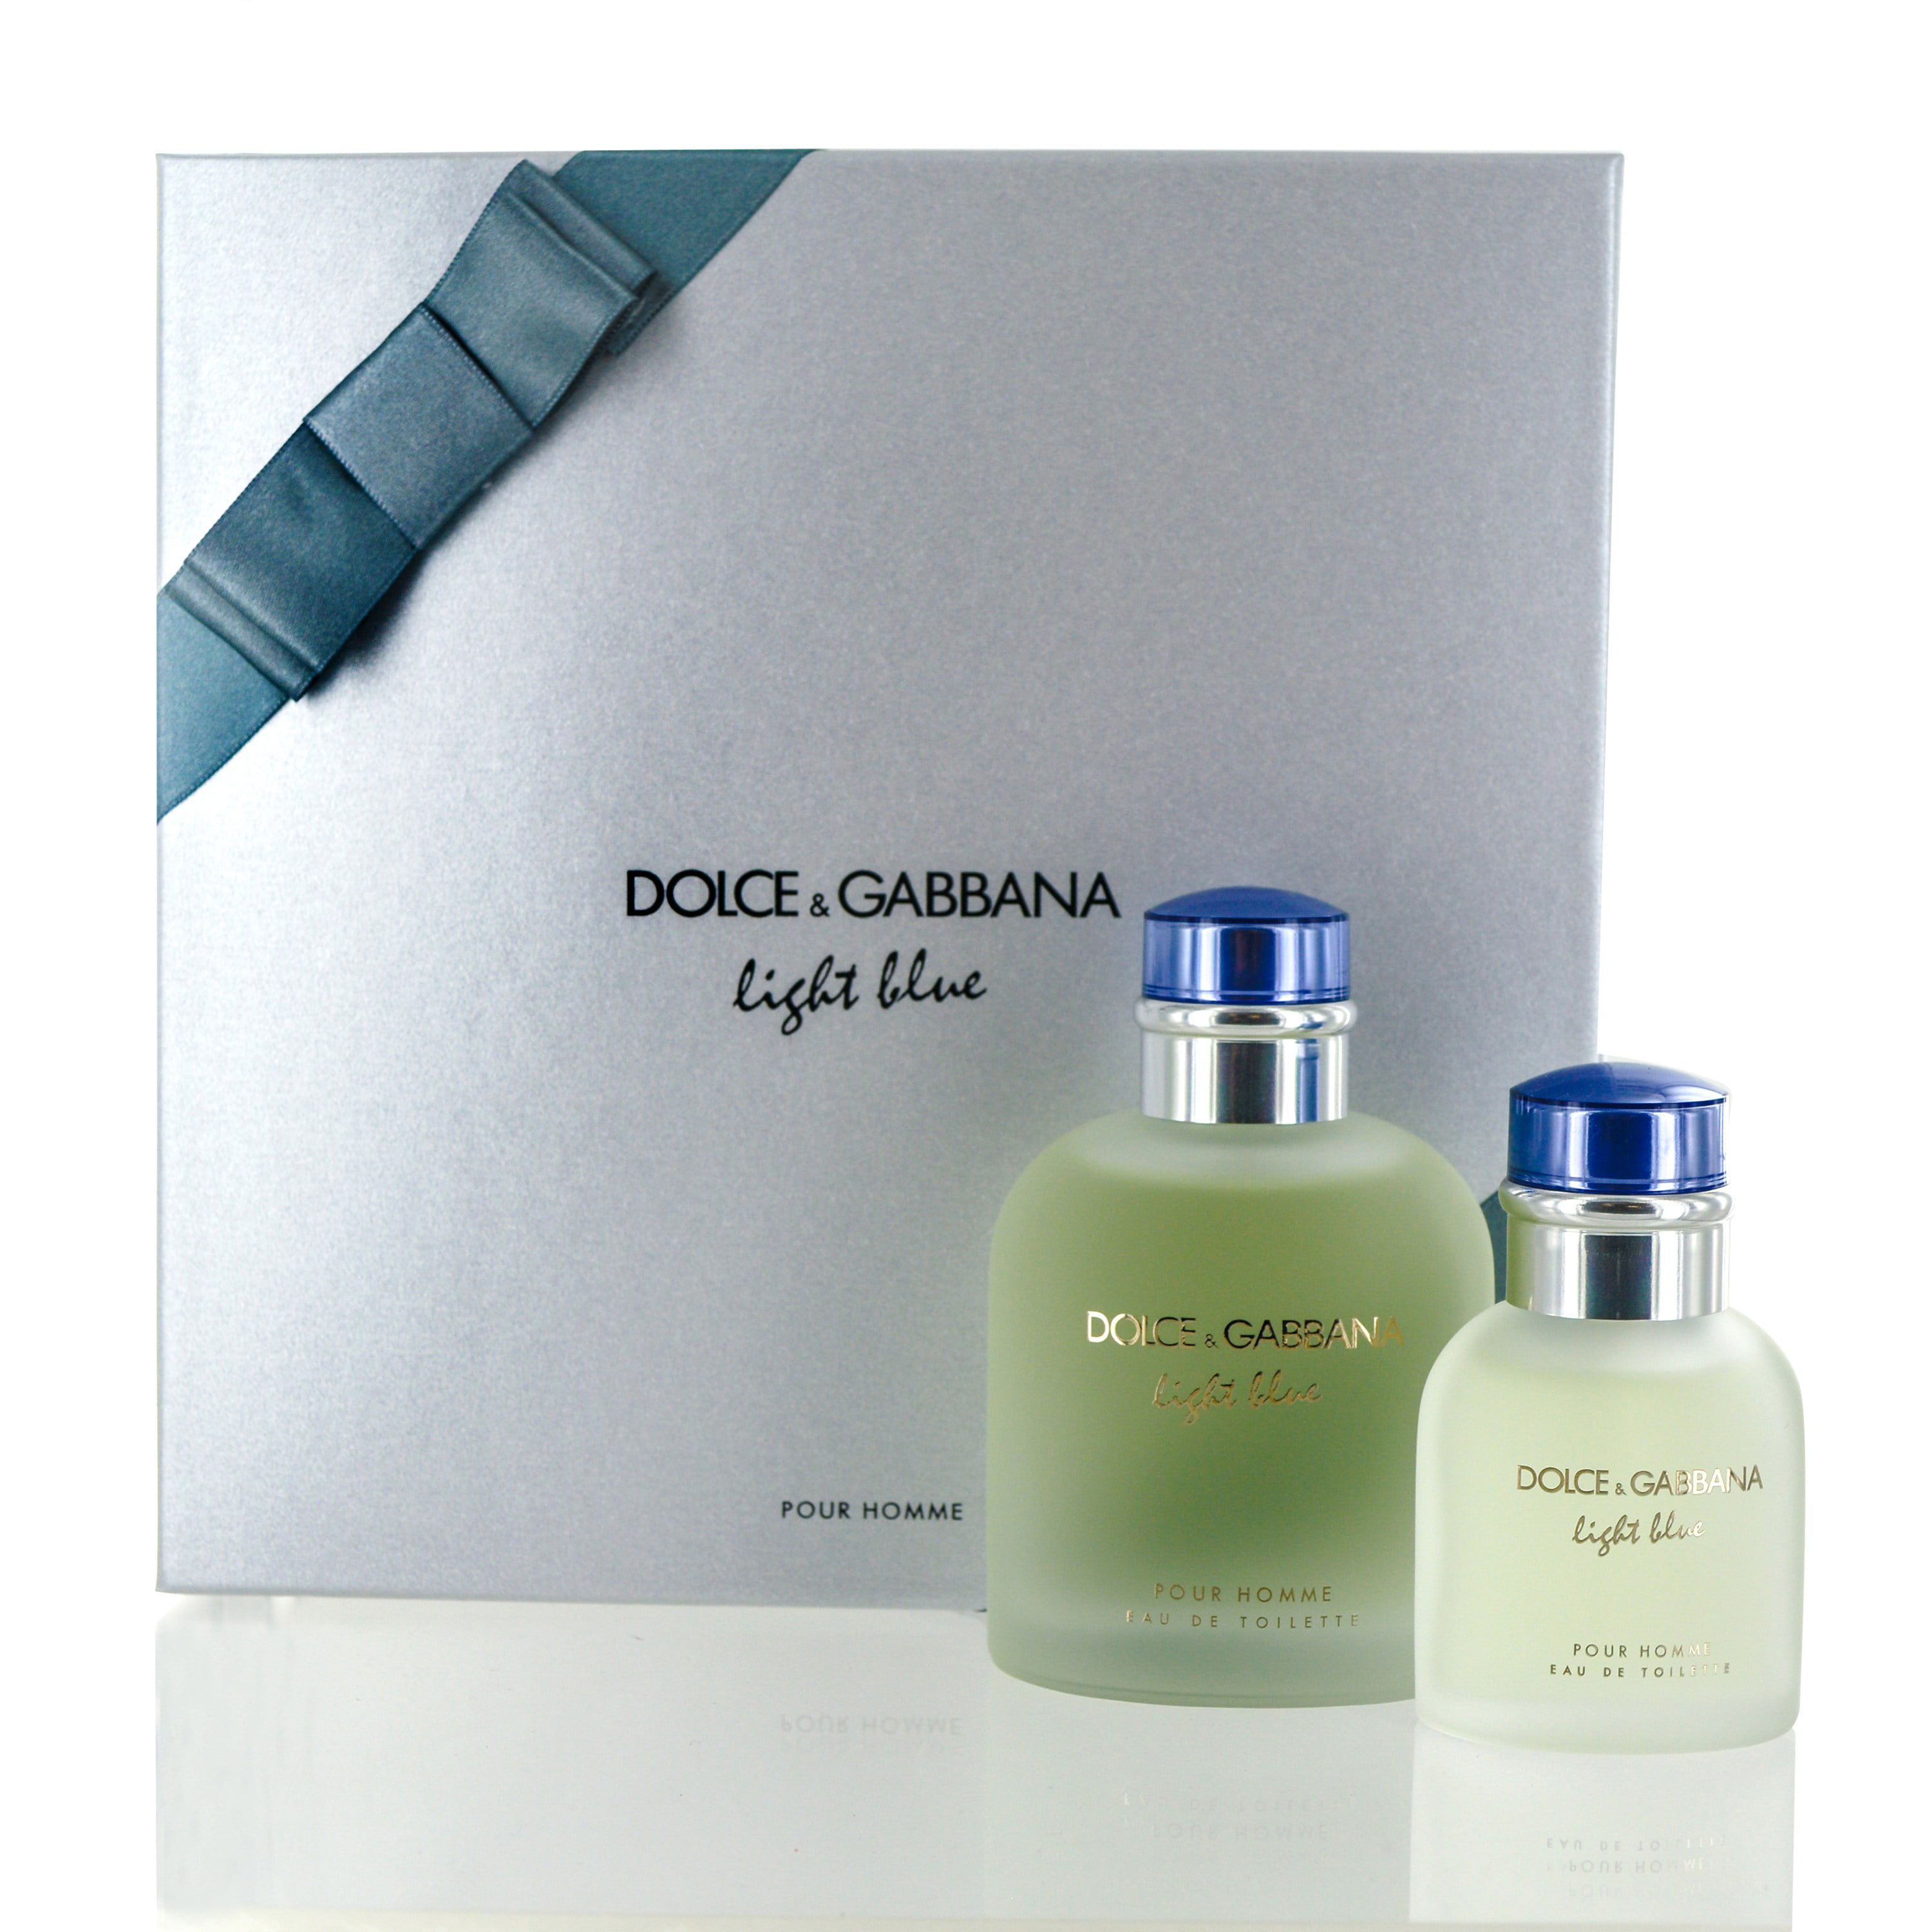 Dolce Gabbana Light Blue мужские. Dolce & Gabbana Light Blue Set. Dolce Gabbana Light Blue pour homme Set. Dolce Gabbana Light Blue man. Dolce gabbana light blue vibes